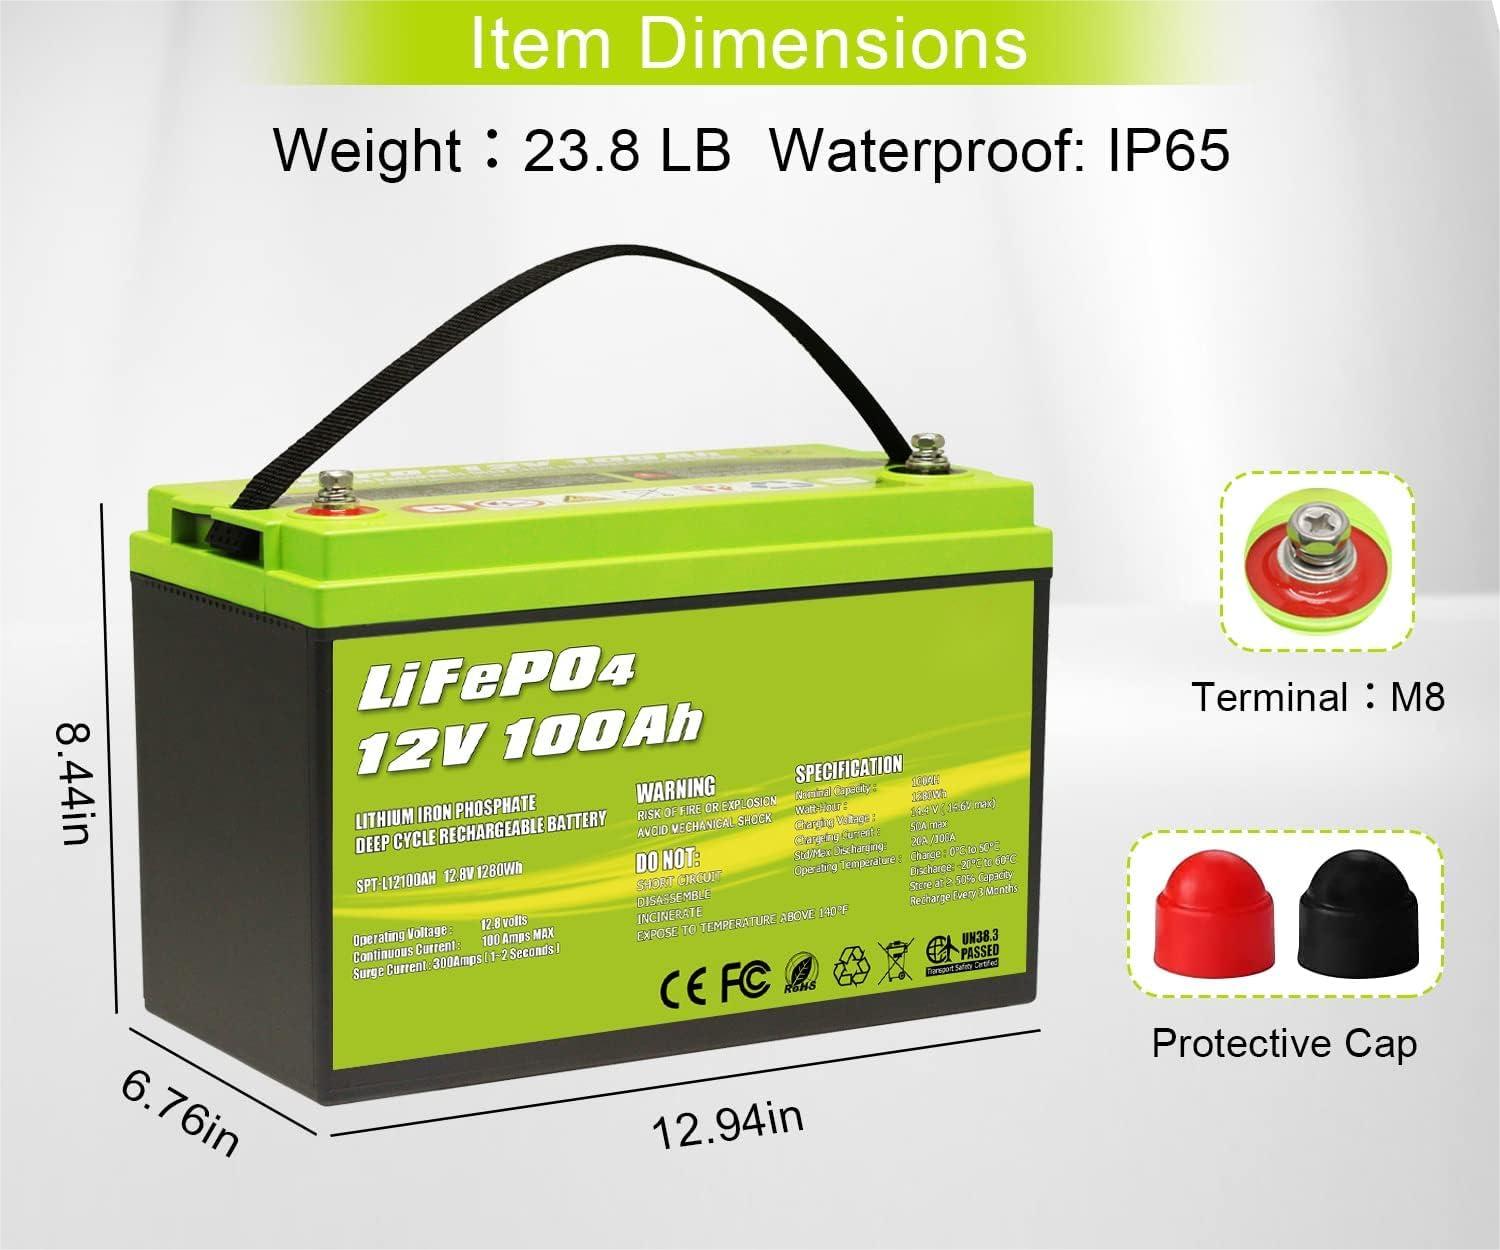 Batería de litio de ciclo profundo LiFePO4 de 12V 100Ah 